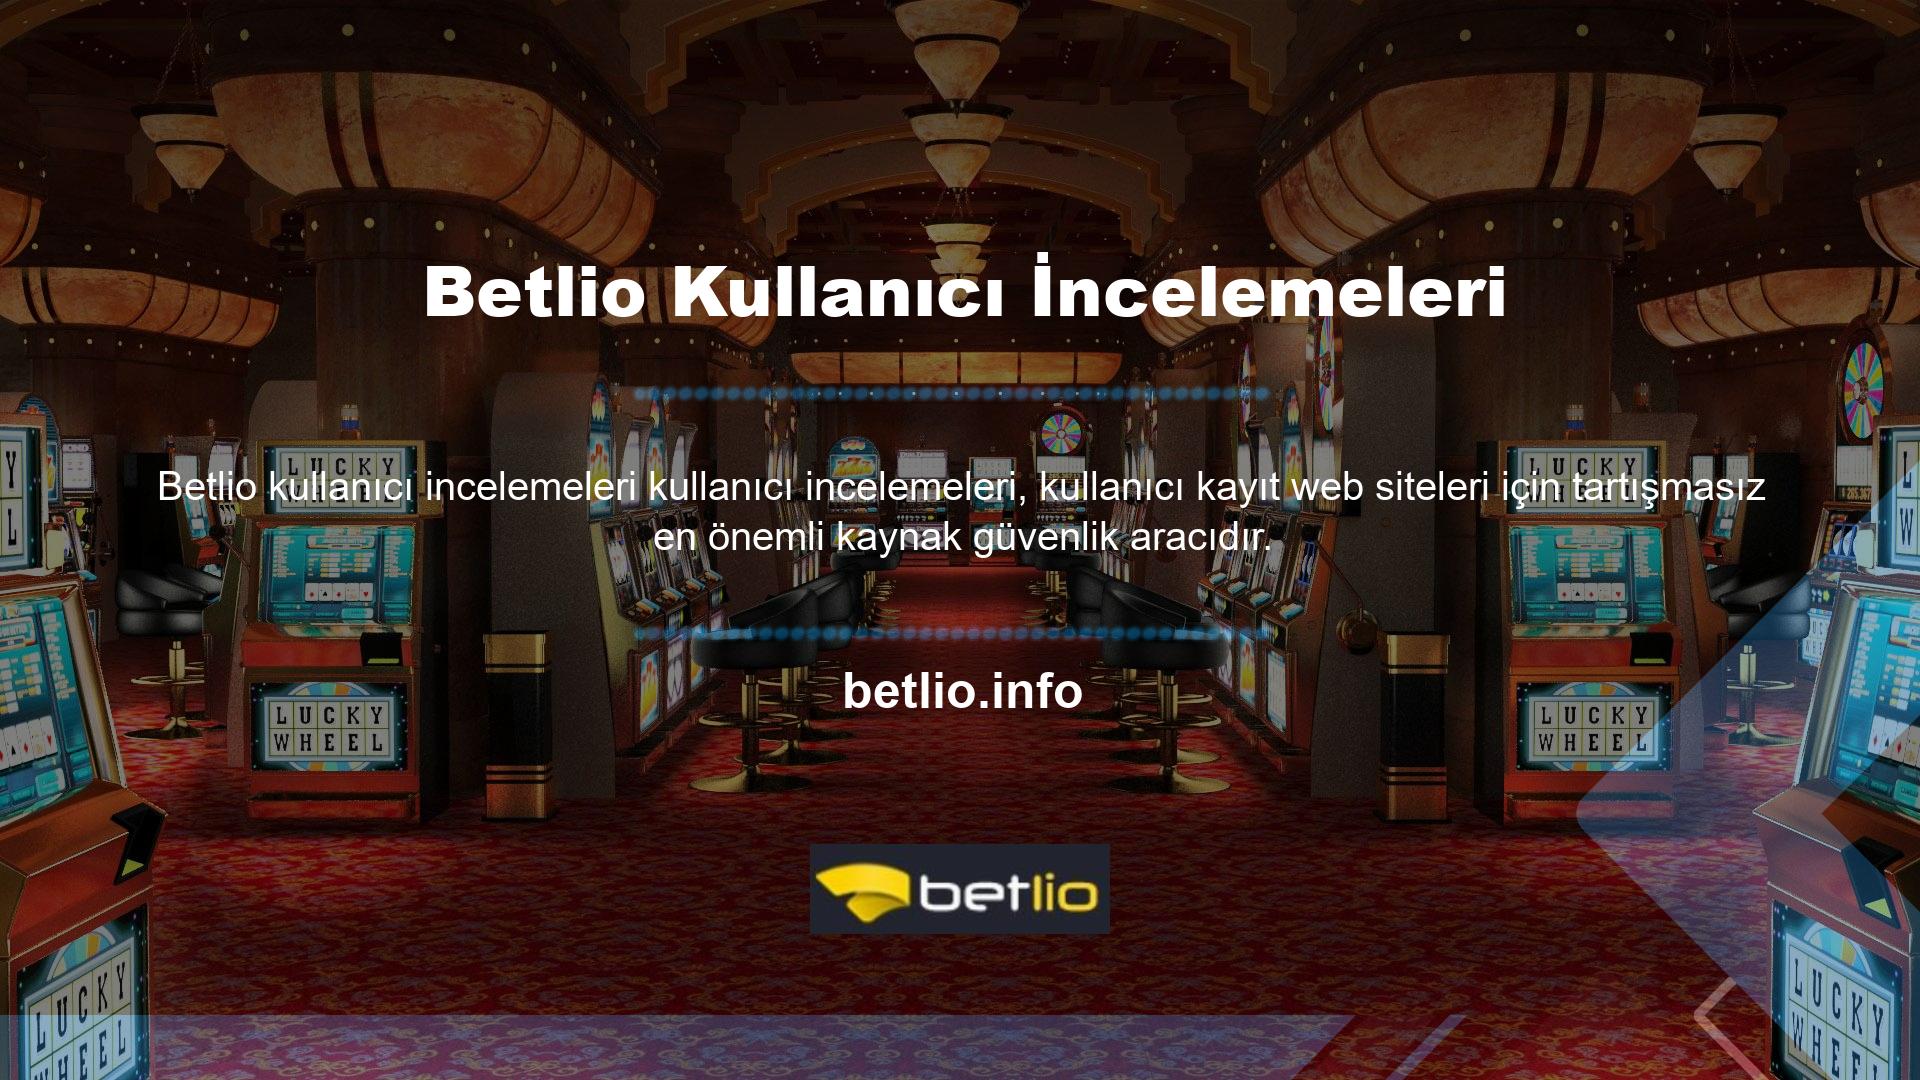 Elbette, bir casino sitesinin güvenli olduğundan emin olmak için Betlio spor bahisleri ilk kontrol kaynağı, kullanıcı incelemeleridir